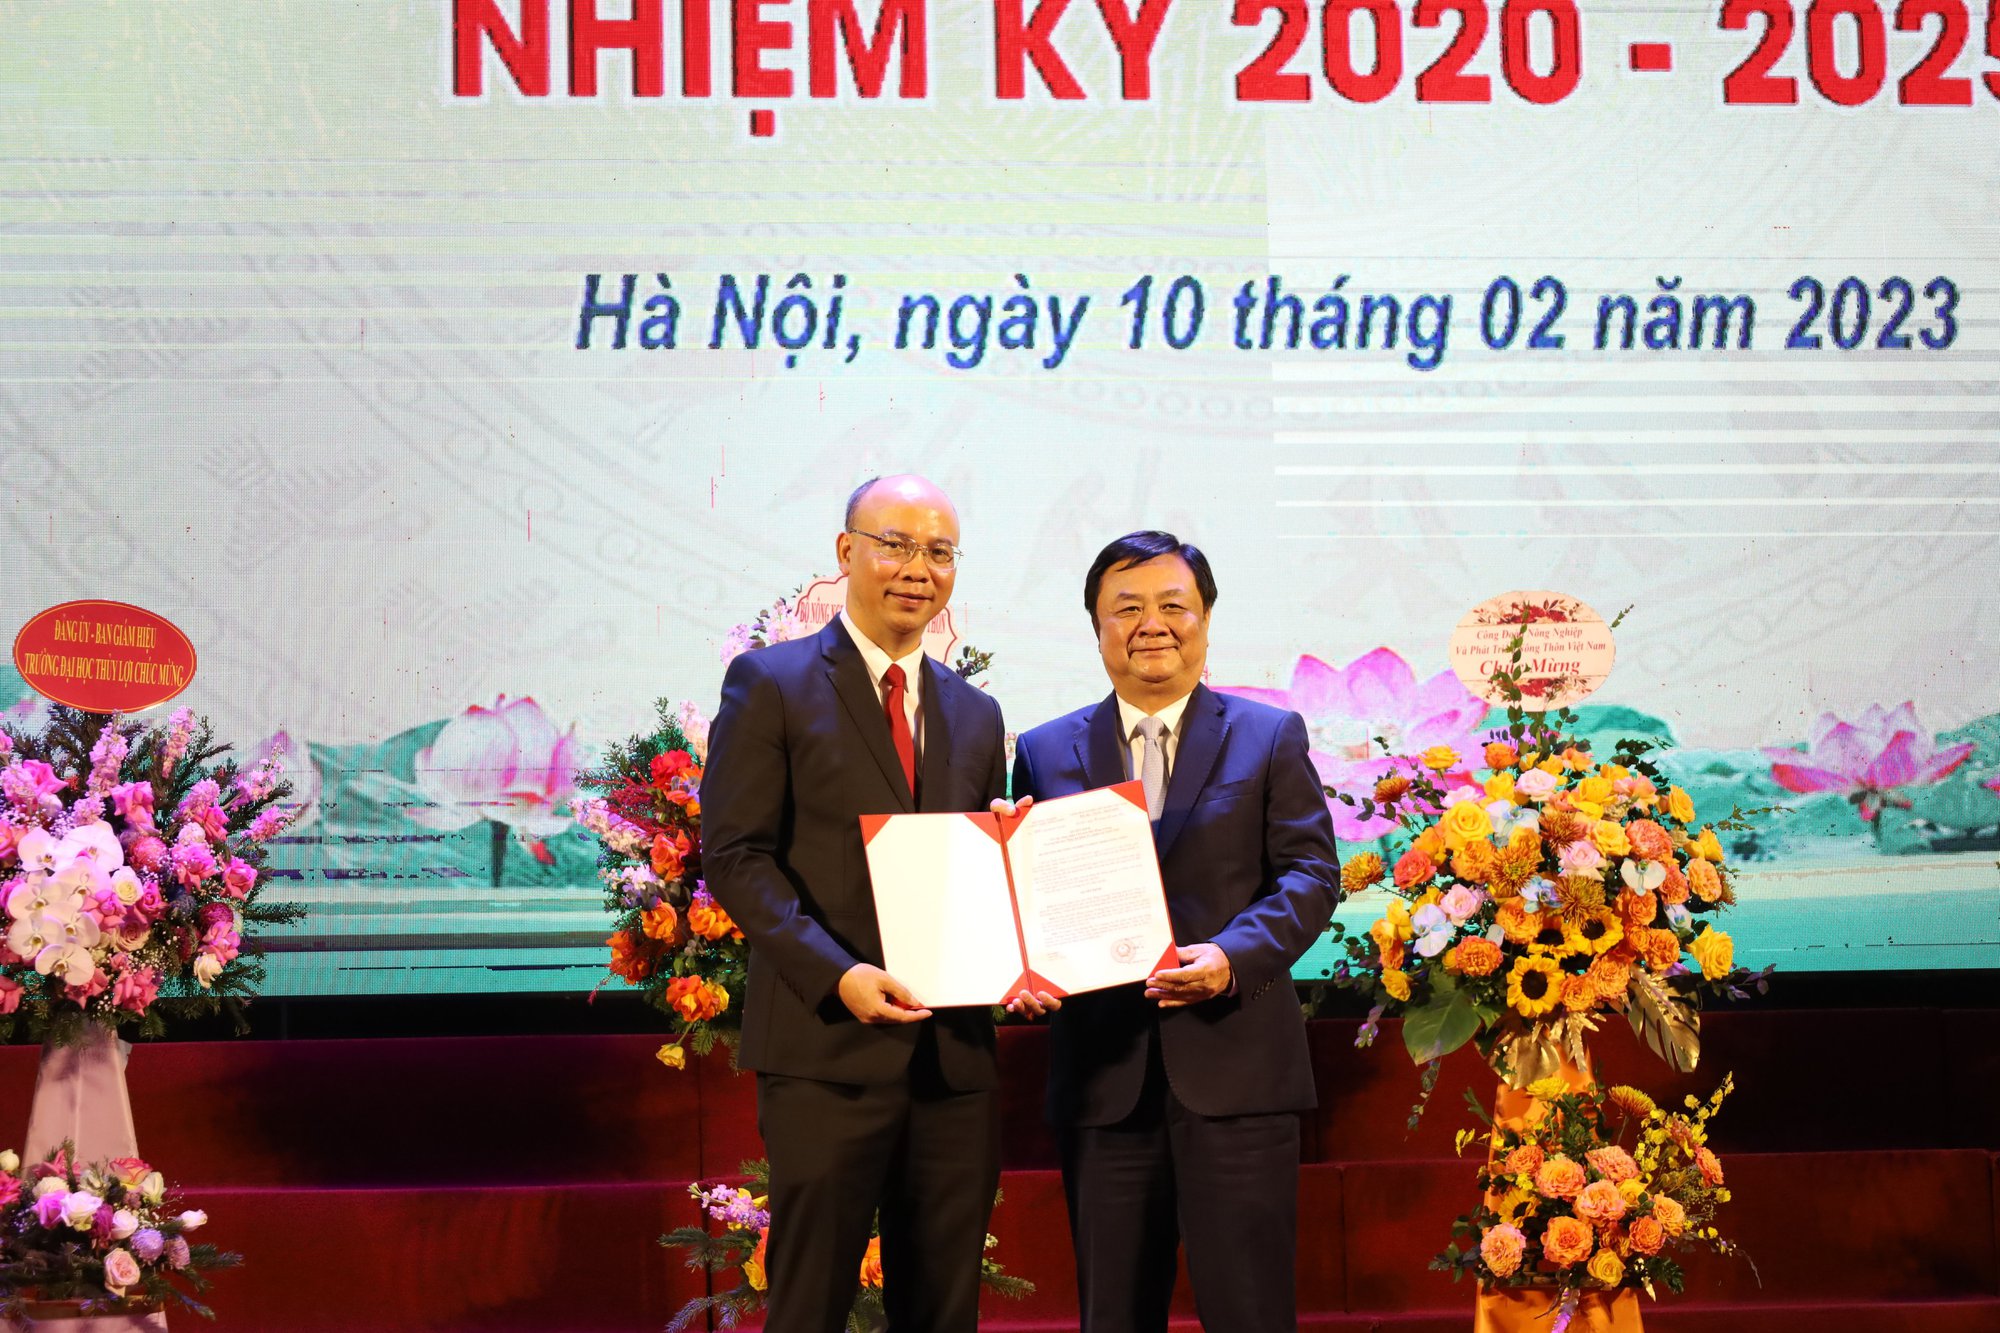 PGS Nguyễn Hữu Huế được bổ nhiệm làm Chủ tịch Hội đồng Trường Đại học Thủy lợi khoá IV, nhiệm kỳ 2020-2025 - Ảnh 1.